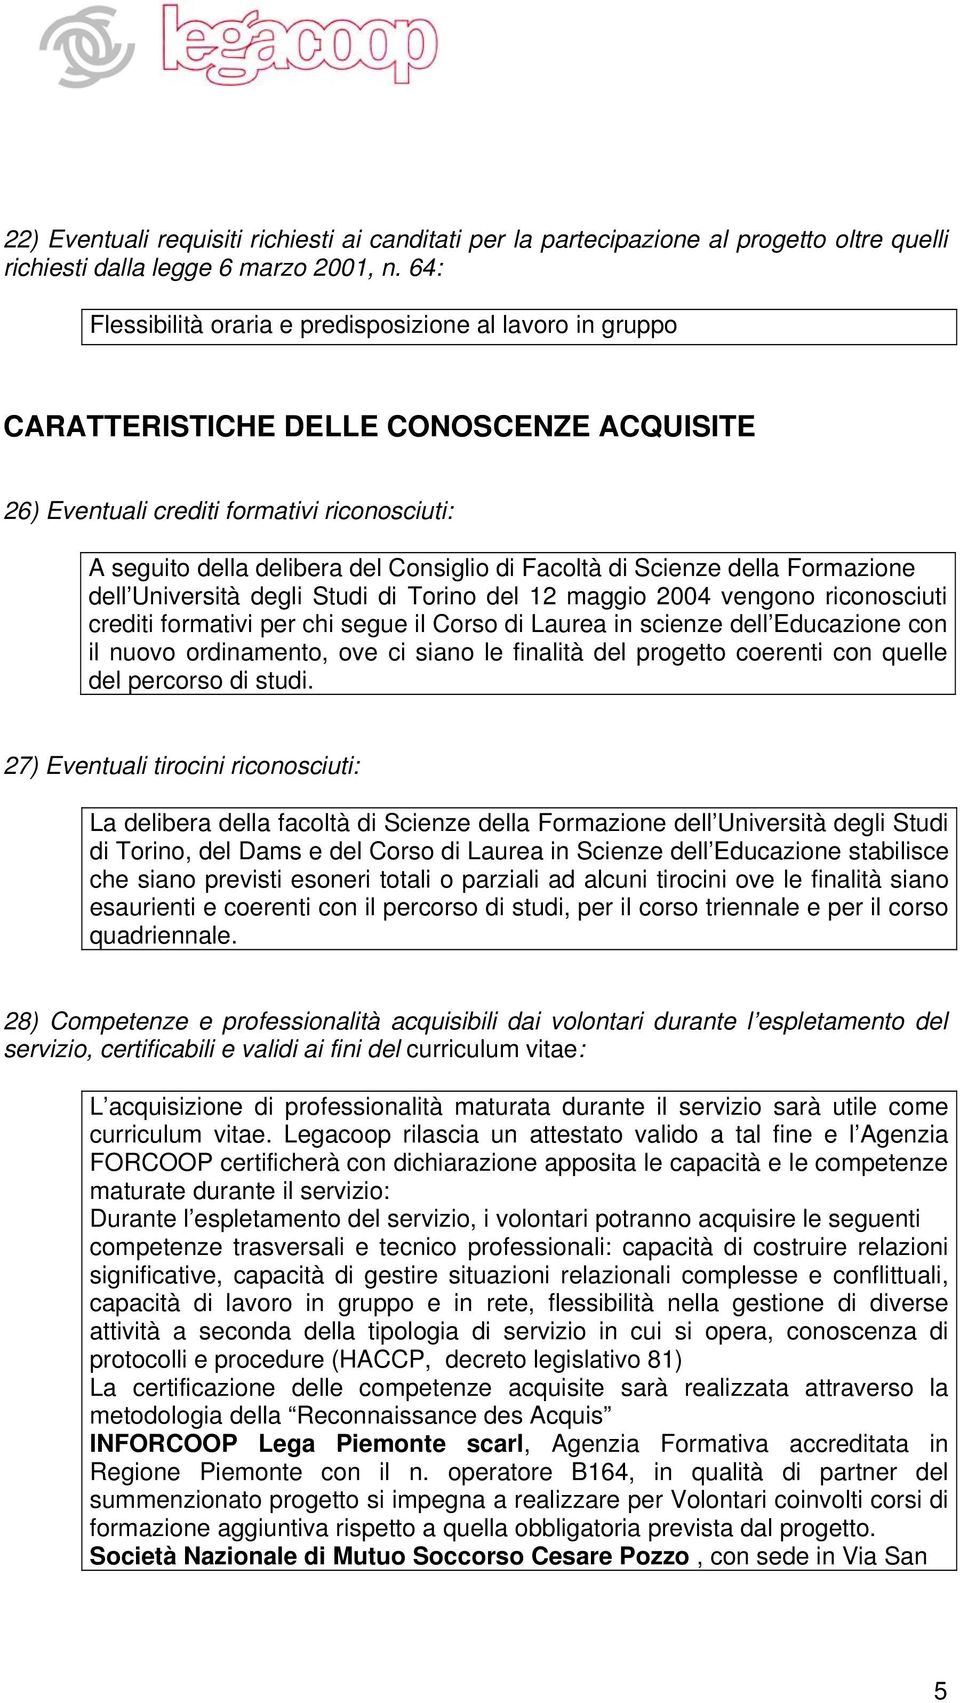 Facoltà di Scienze della Formazione dell Università degli Studi di Torino del 12 maggio 2004 vengono riconosciuti crediti formativi per chi segue il Corso di Laurea in scienze dell Educazione con il